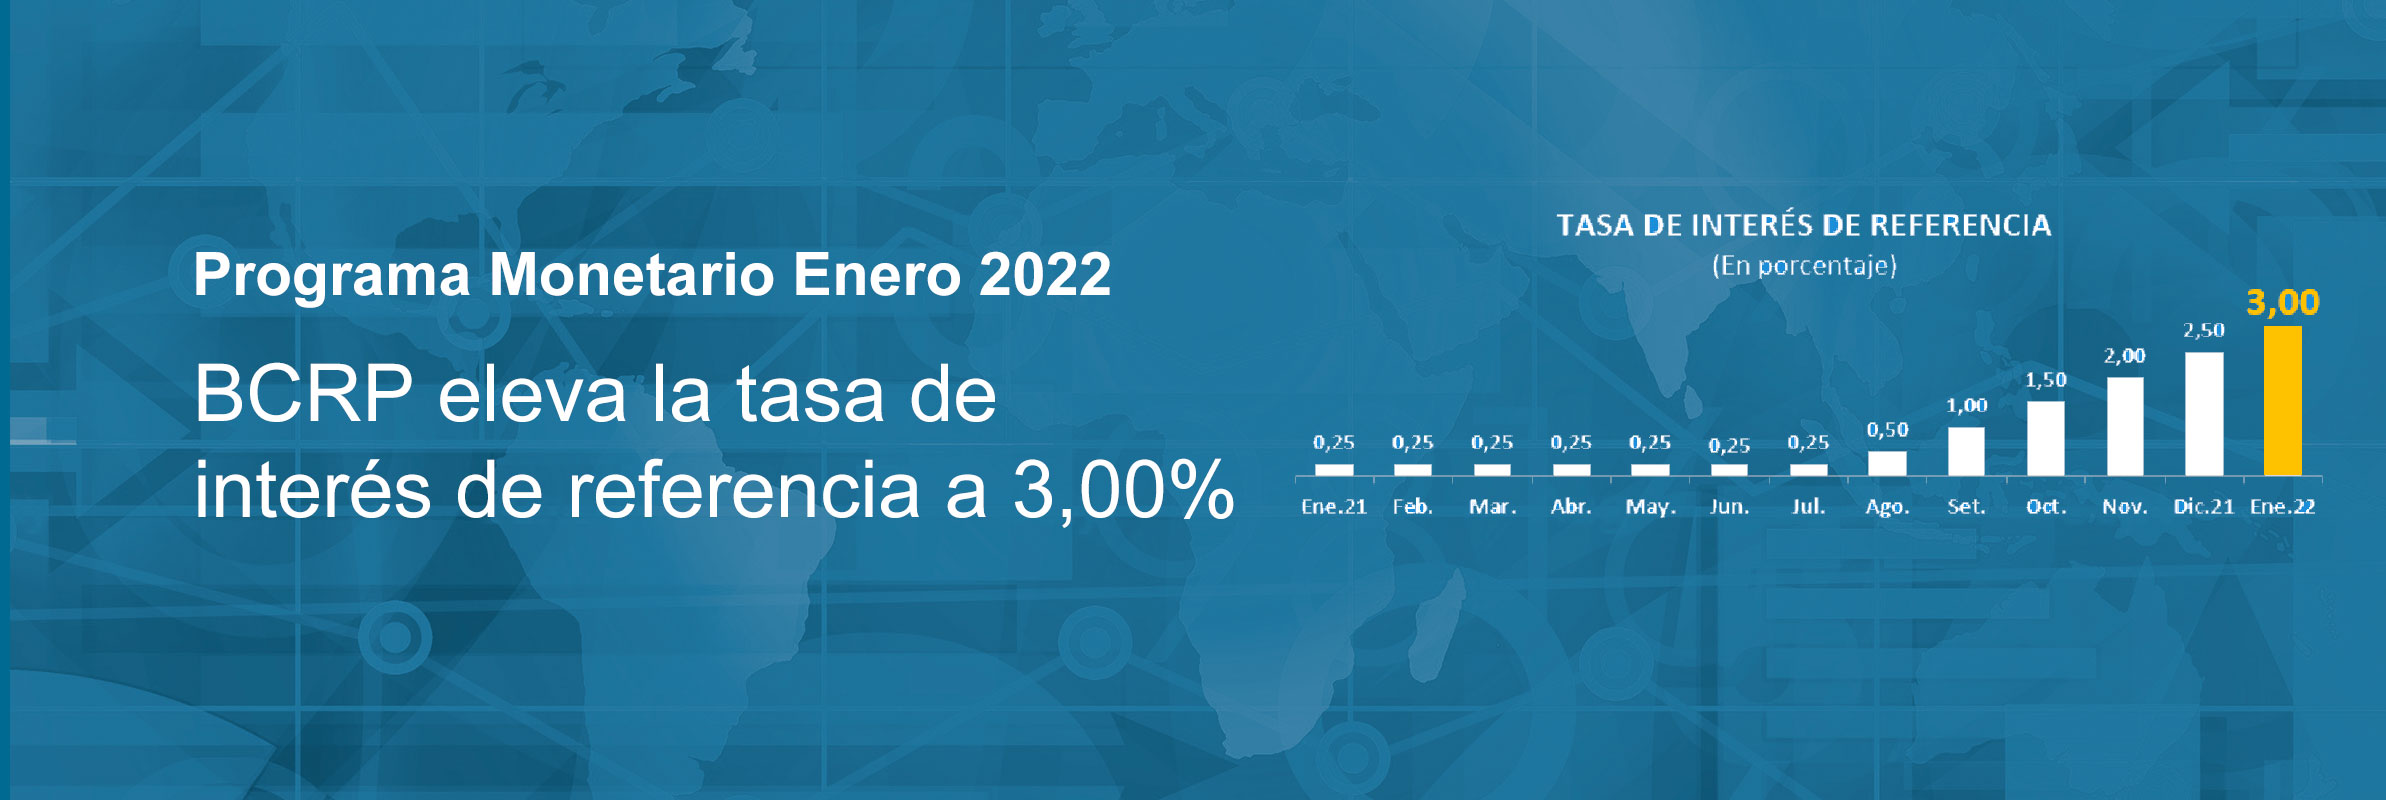 Programa Monetario de Enero 2022: BCRP eleva la tasa de interés de referencia a 3,00%